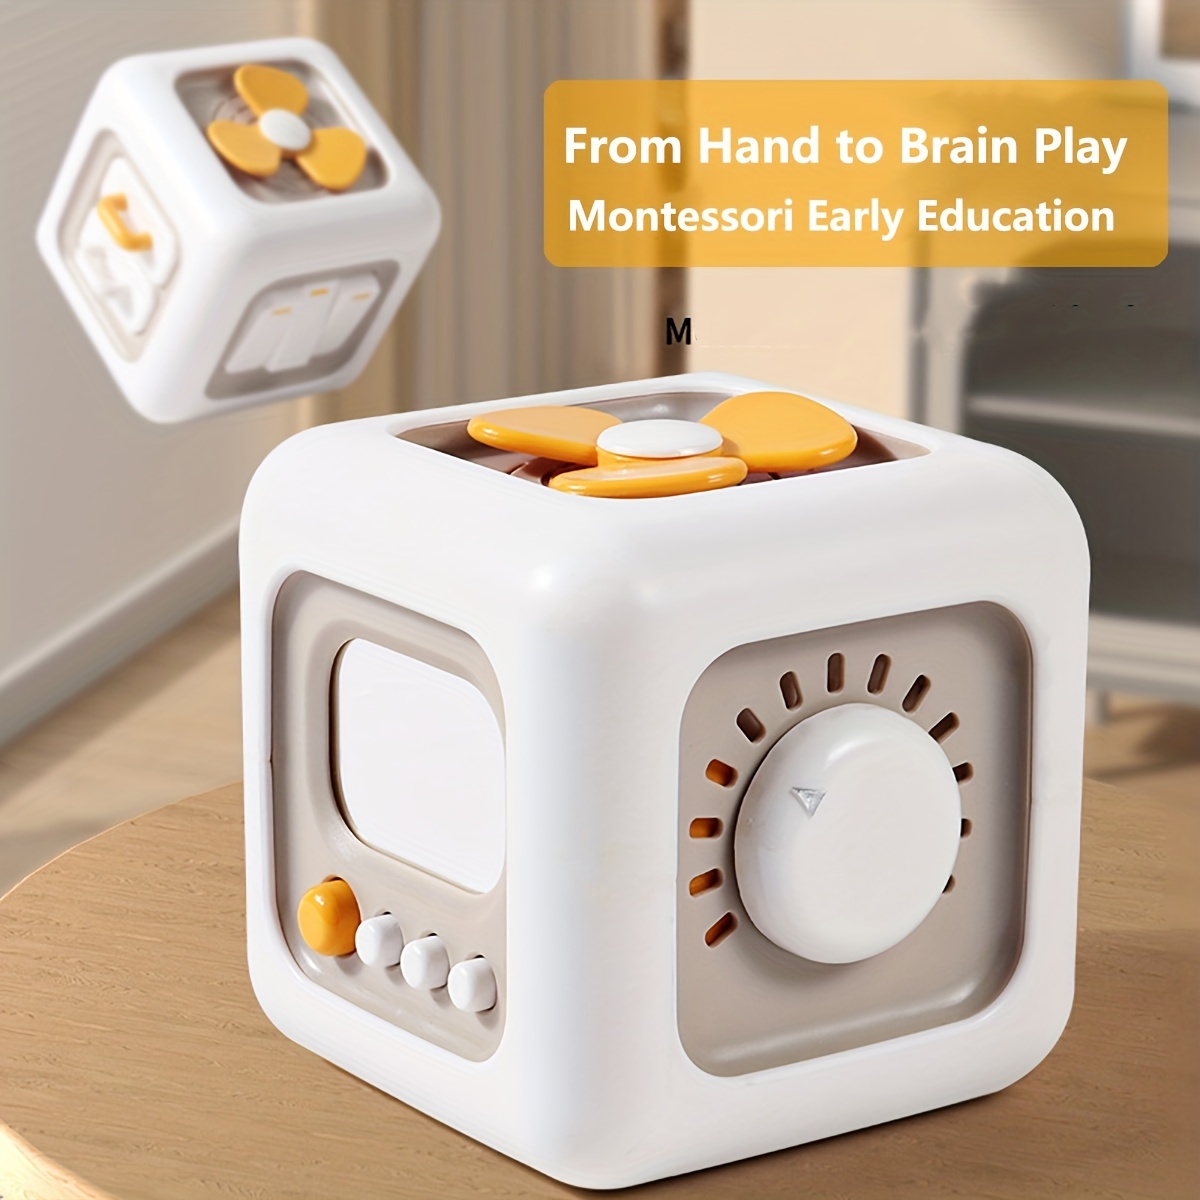 Jogos de Desenvolvimento Educacional Infantil, Brinquedo Sensorial  Montessori para Bebé, Brinquedos Educativos para Crianças, 1 2 3 4 Anos -  AliExpress